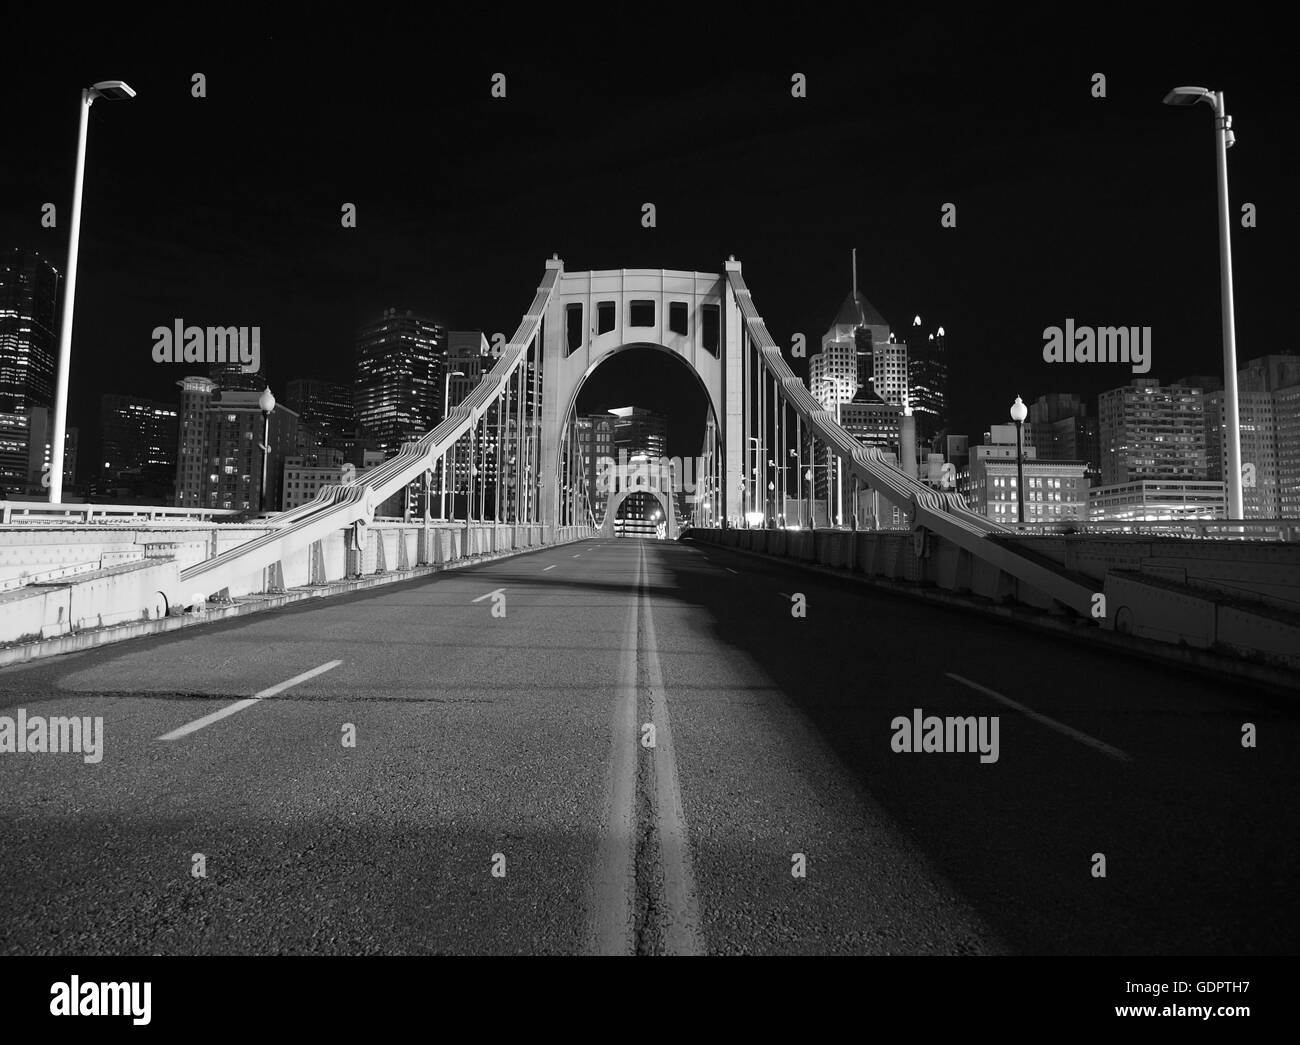 In bianco e nero sul ponte che conduce al centro di Pittsburgh. Accesa con il bagliore del baseball stadium luci. Foto Stock